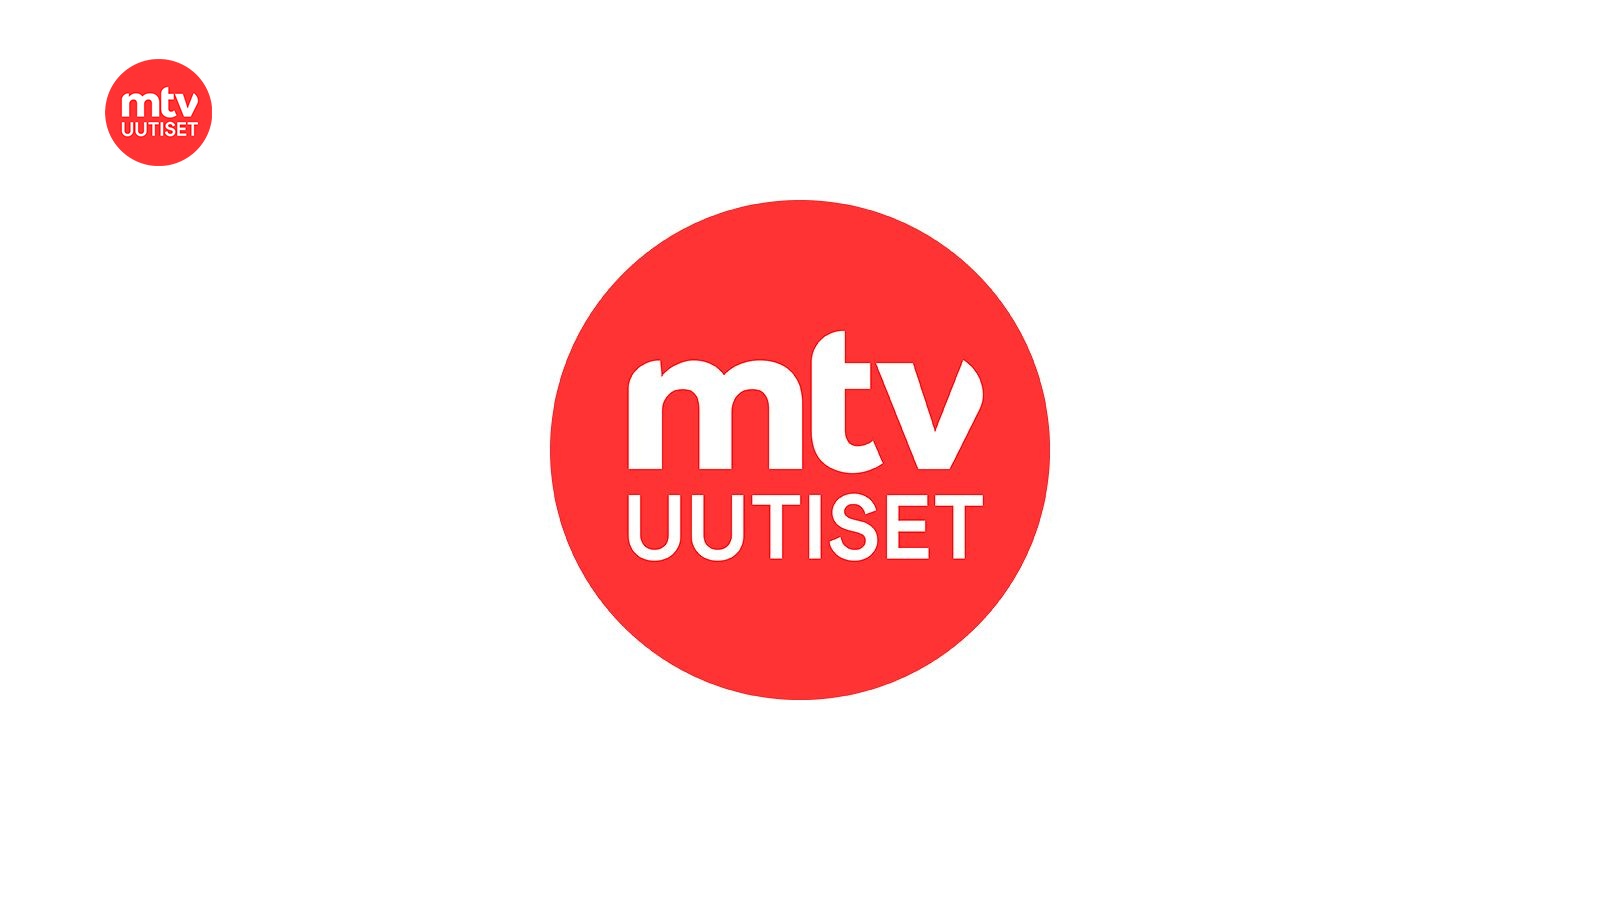 www.mtvuutiset.fi